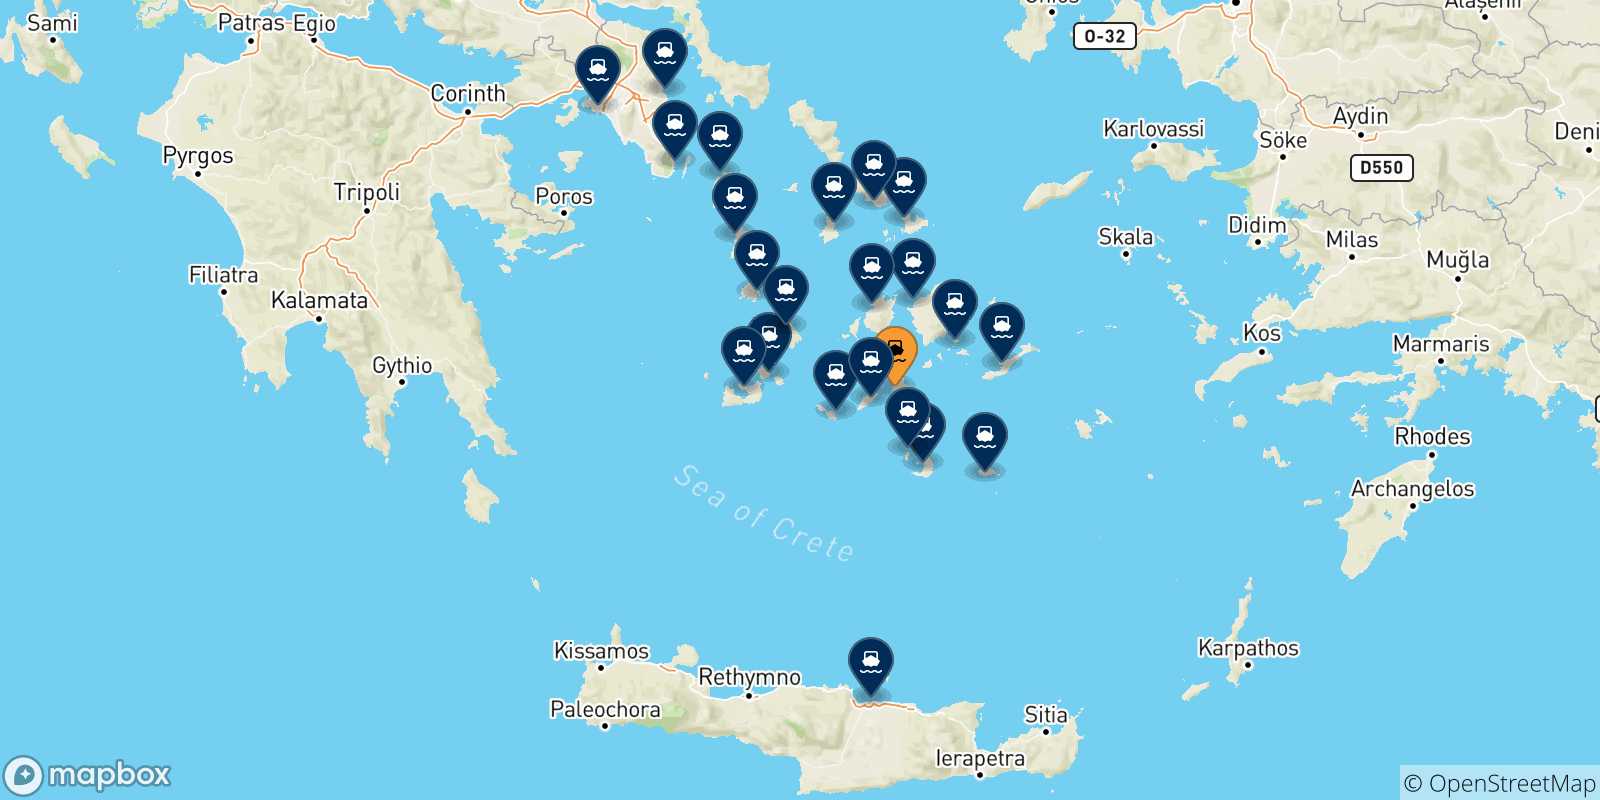 Mappa delle possibili rotte tra Ios e la Grecia